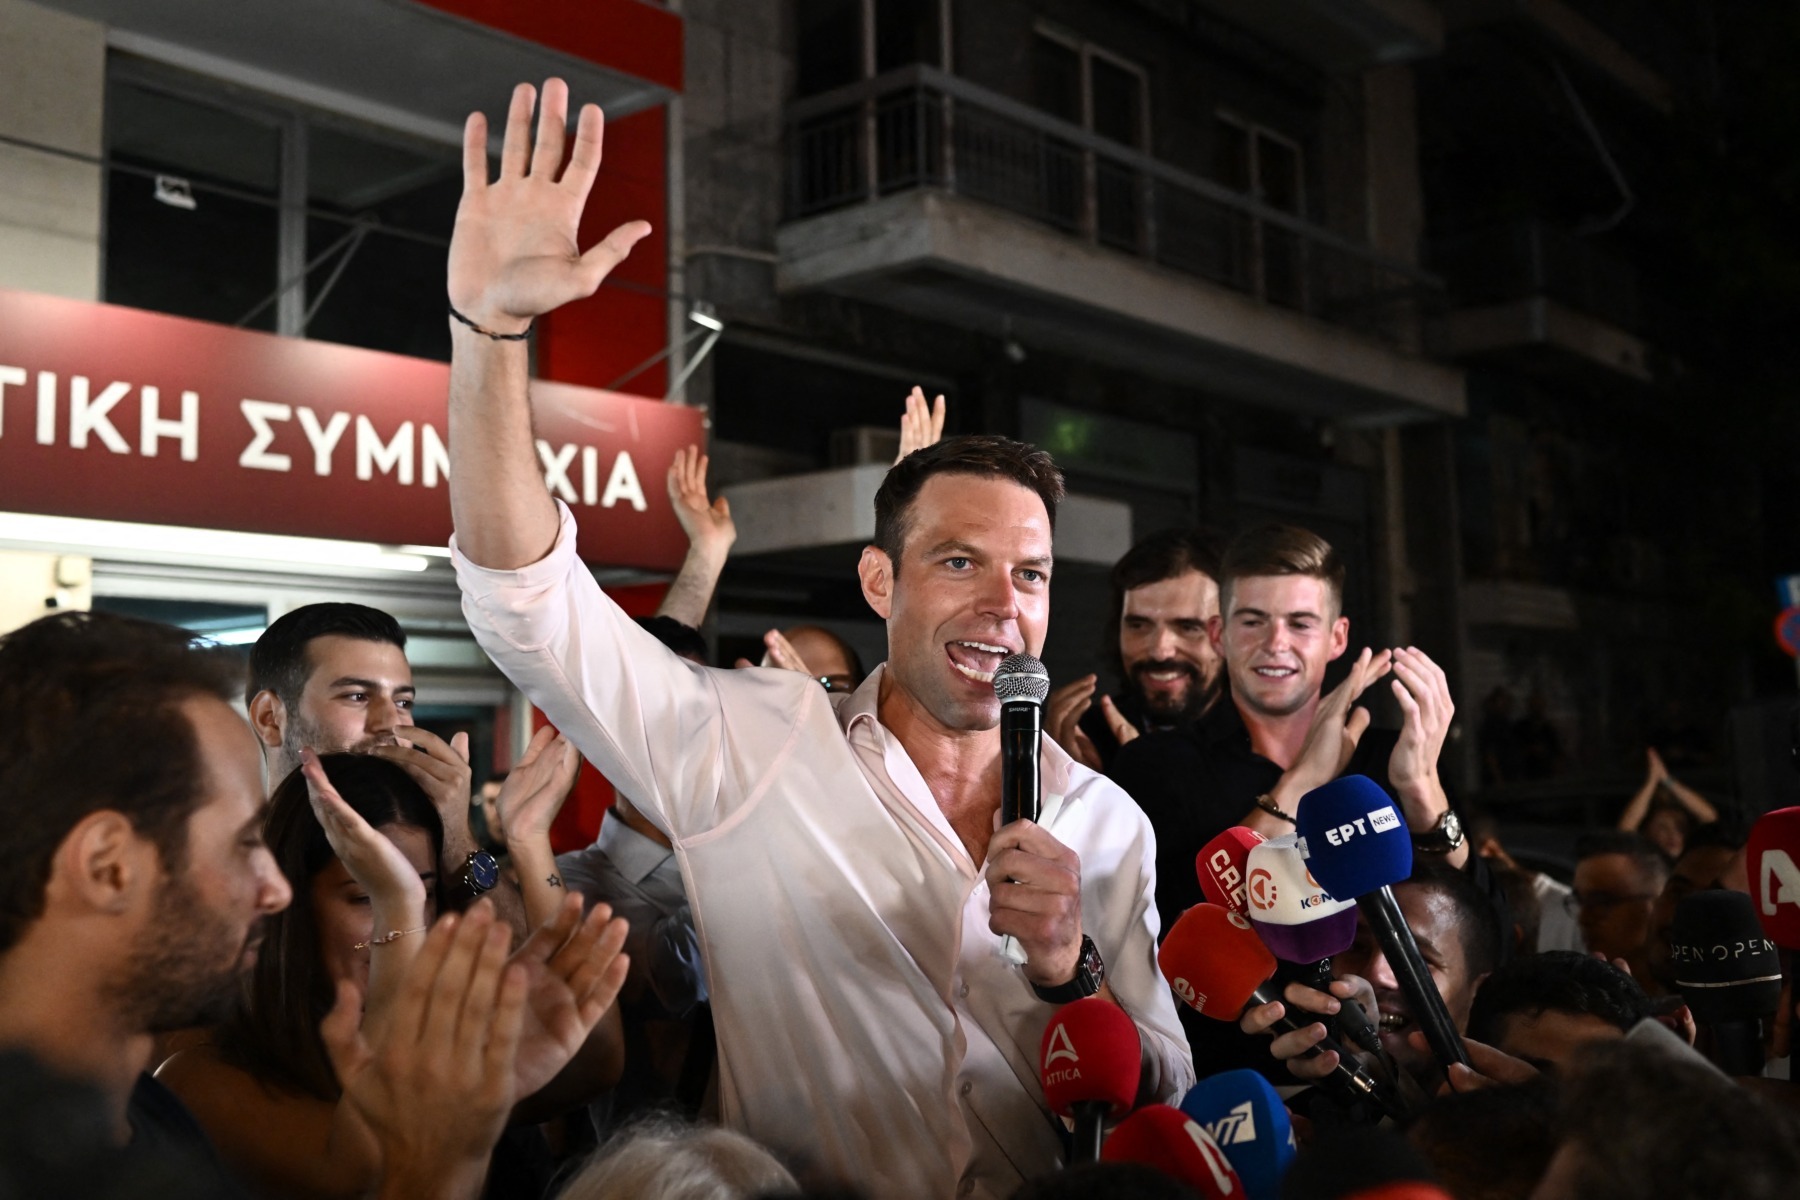 Το ελληνικό αριστερό κόμμα Σύριζα διασπάστηκε μετά την αποχώρηση 45 μελών της ηγεσίας του, δυσαρεστημένο με τη νέα κατεύθυνση